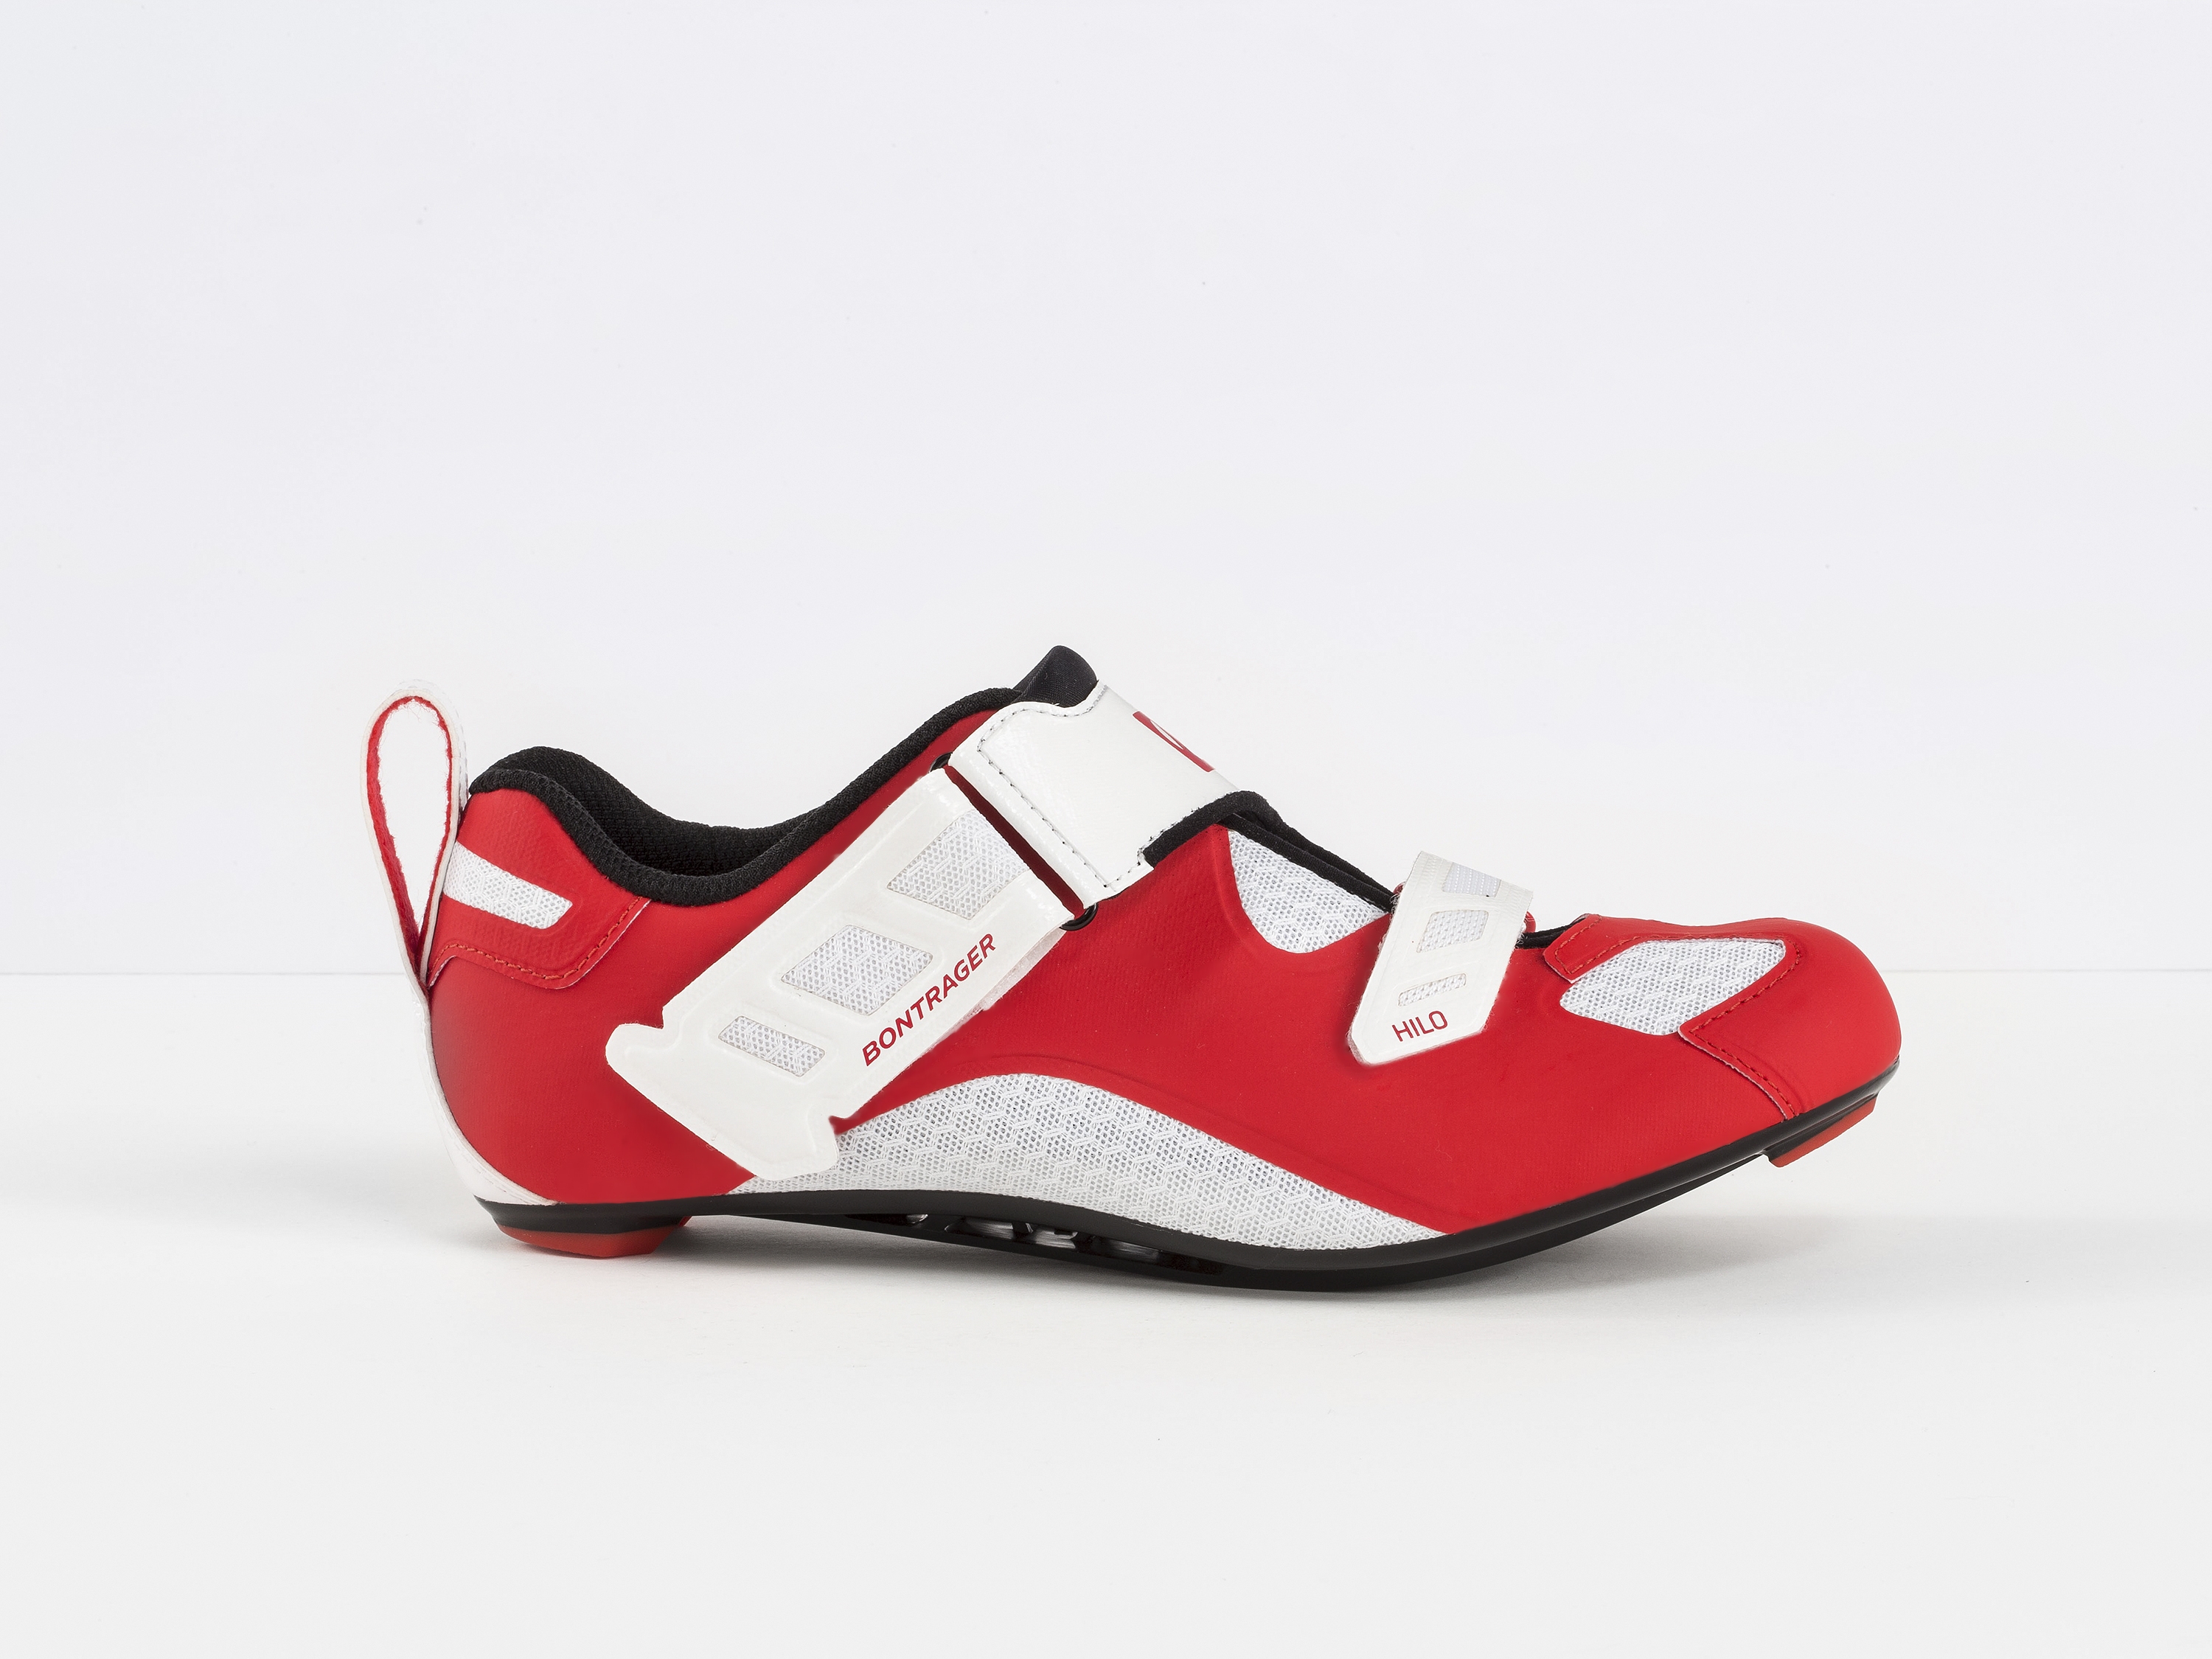 bontrager triathlon shoes